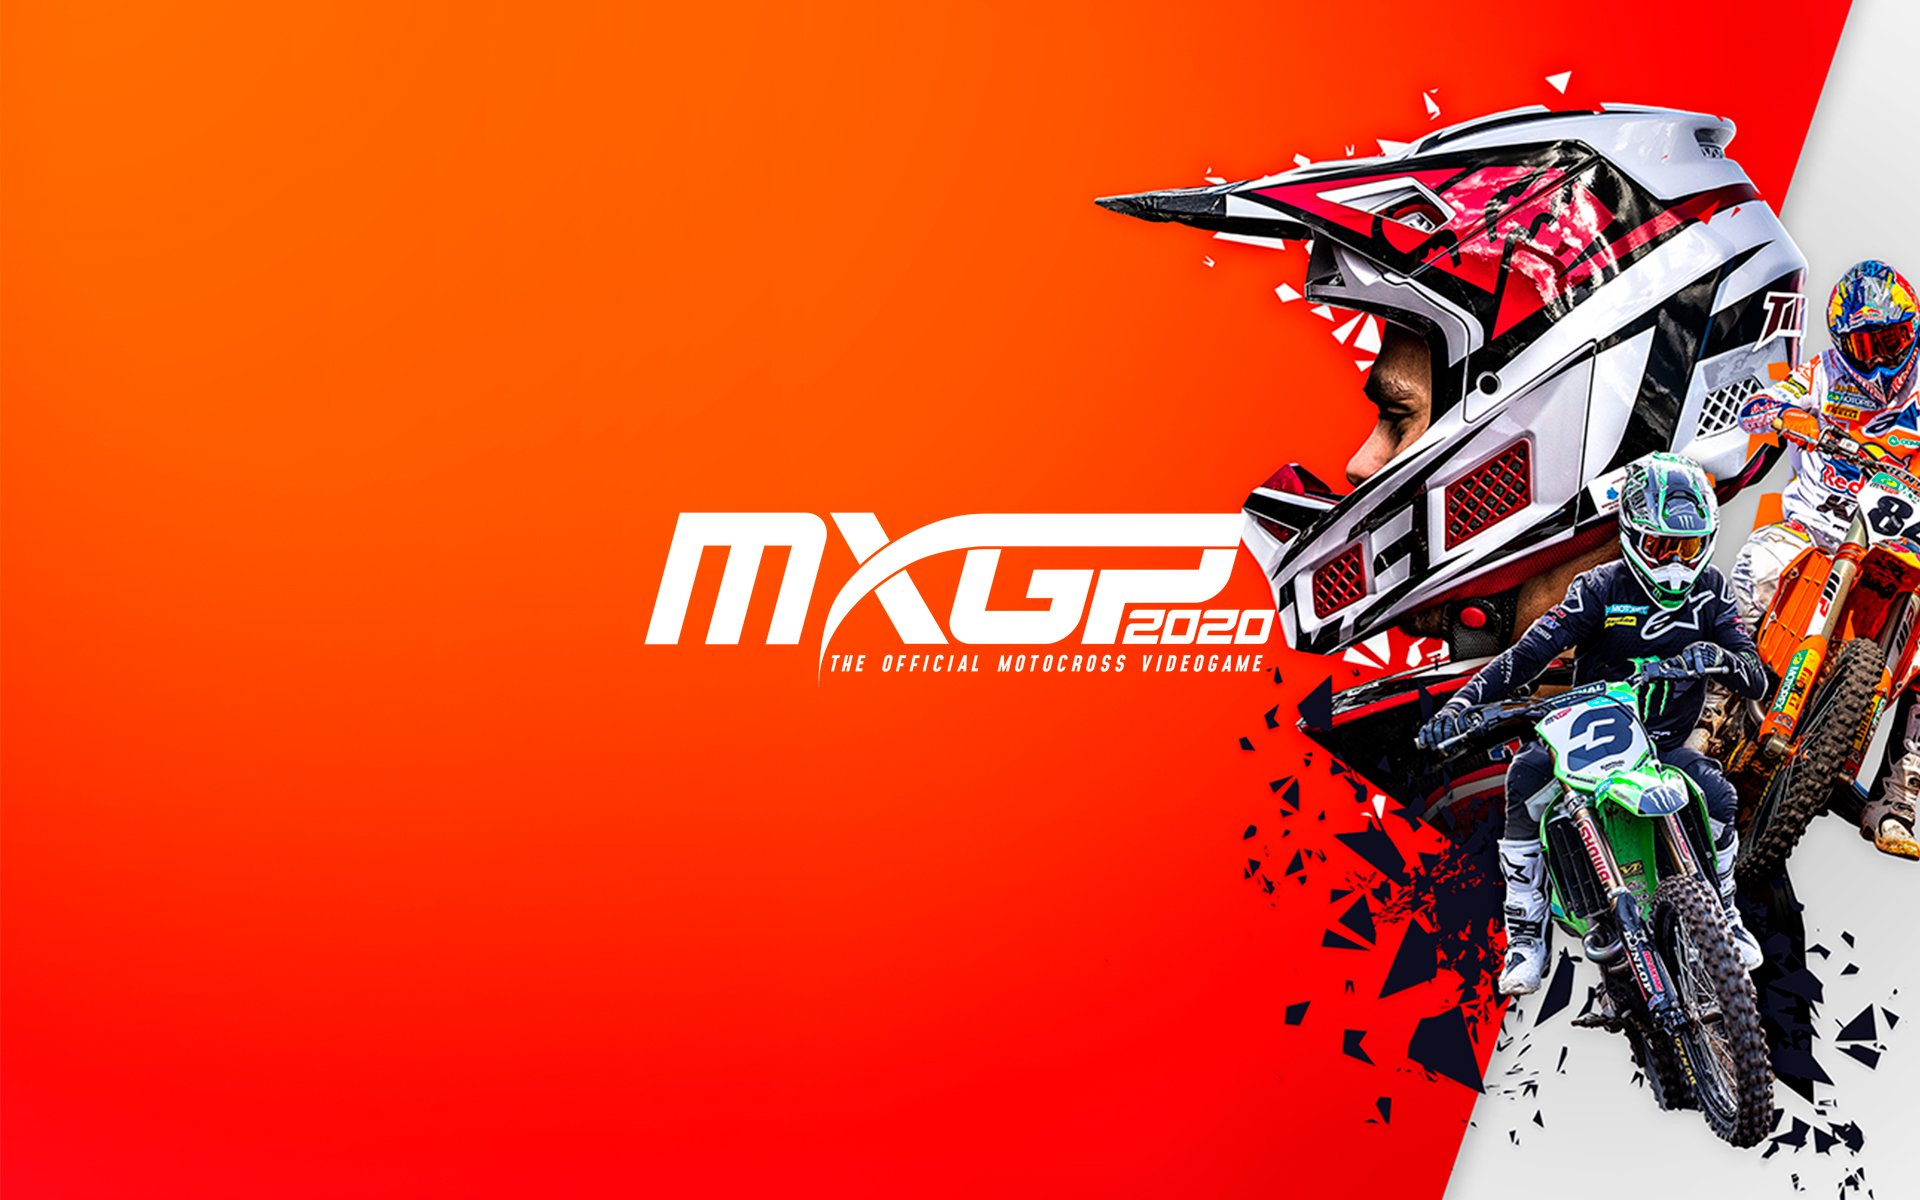 MXGP 2020 - The Official Motocross Videogame por R$ 93.99